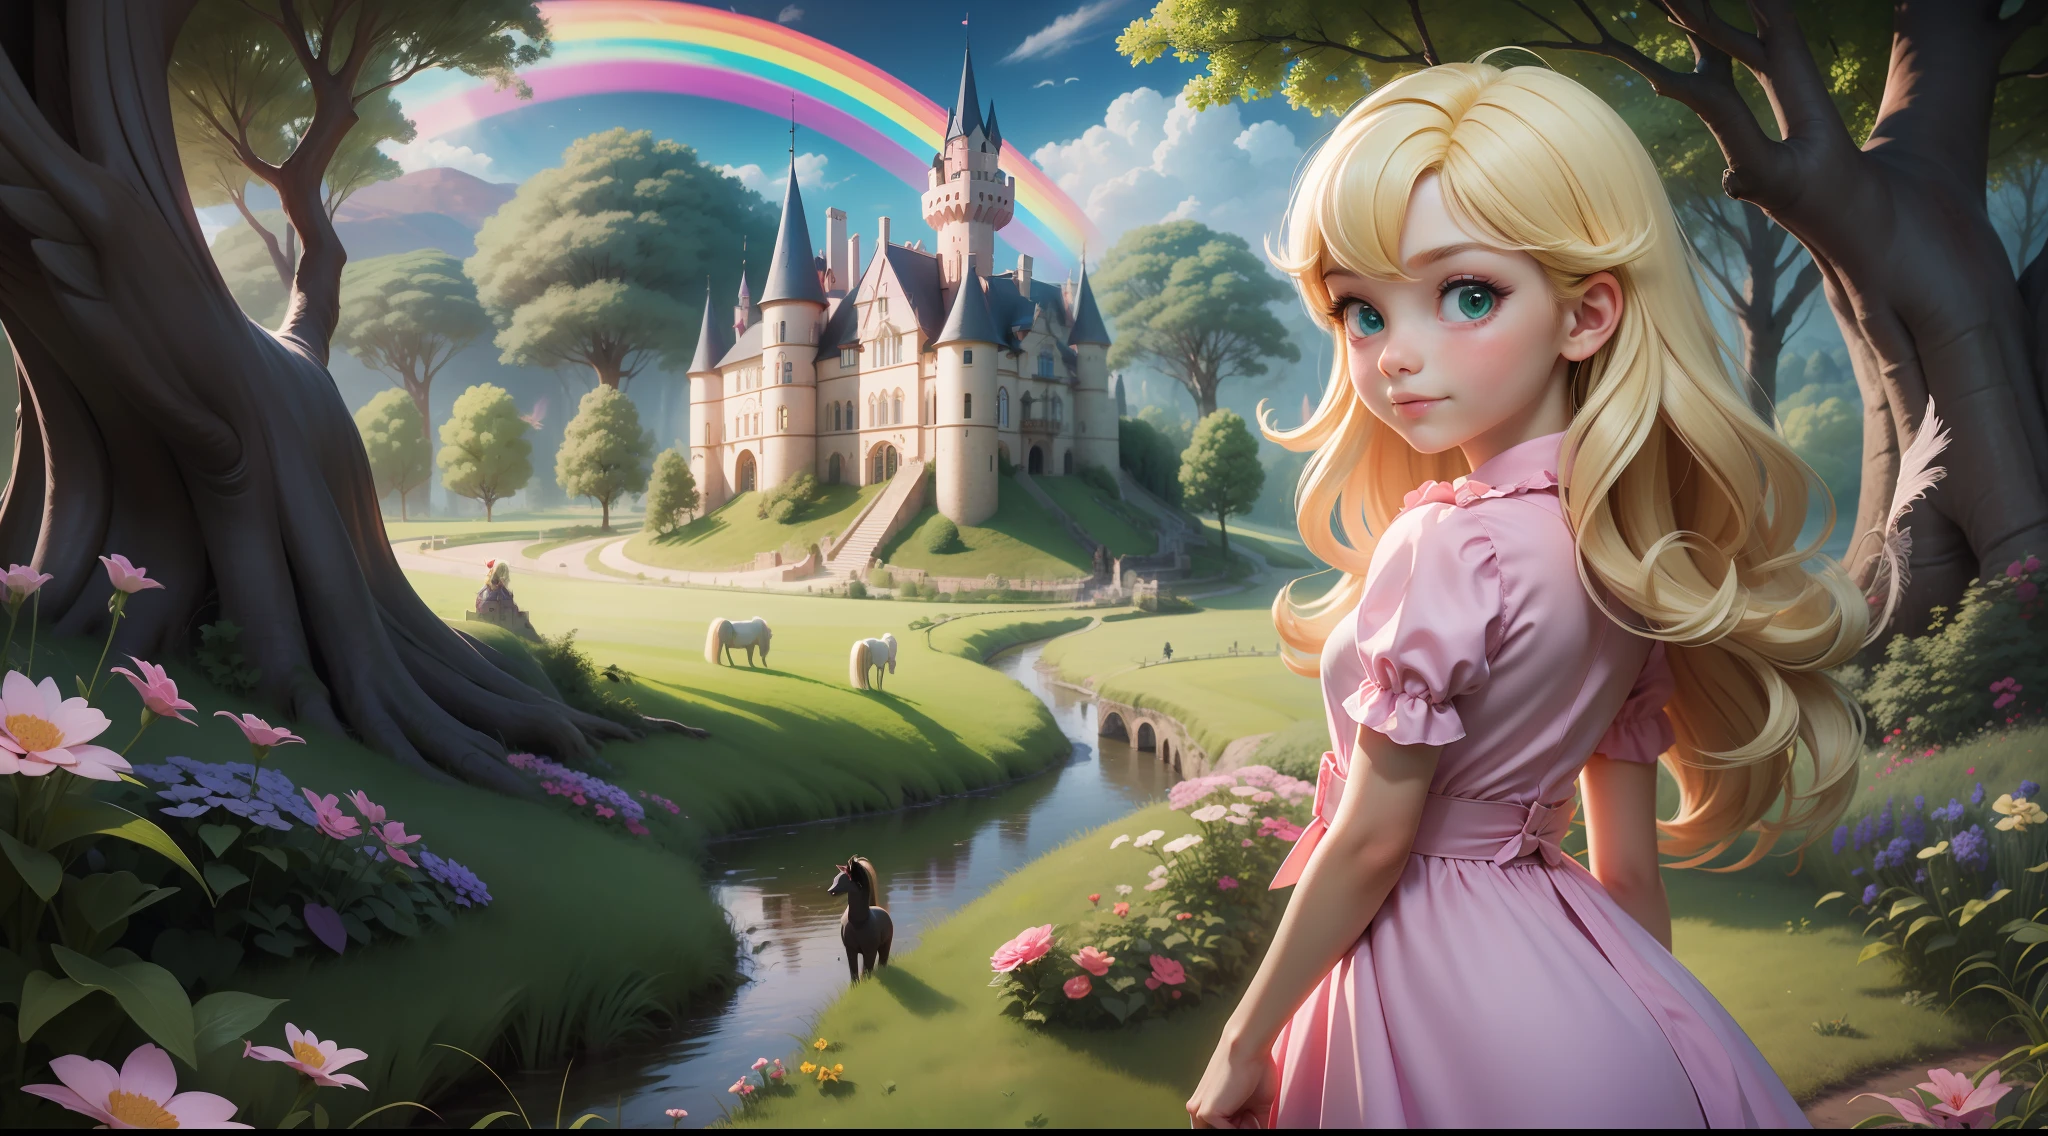 "Une petite fille de 6 ans, blonde et yeux verts, dans une simple robe rose, avec elle dos au spectateur, regarder un monde fantastique, champs verdoyants, bois sombres, poneys ailés, arcs en ciel, château en arrière-plan."